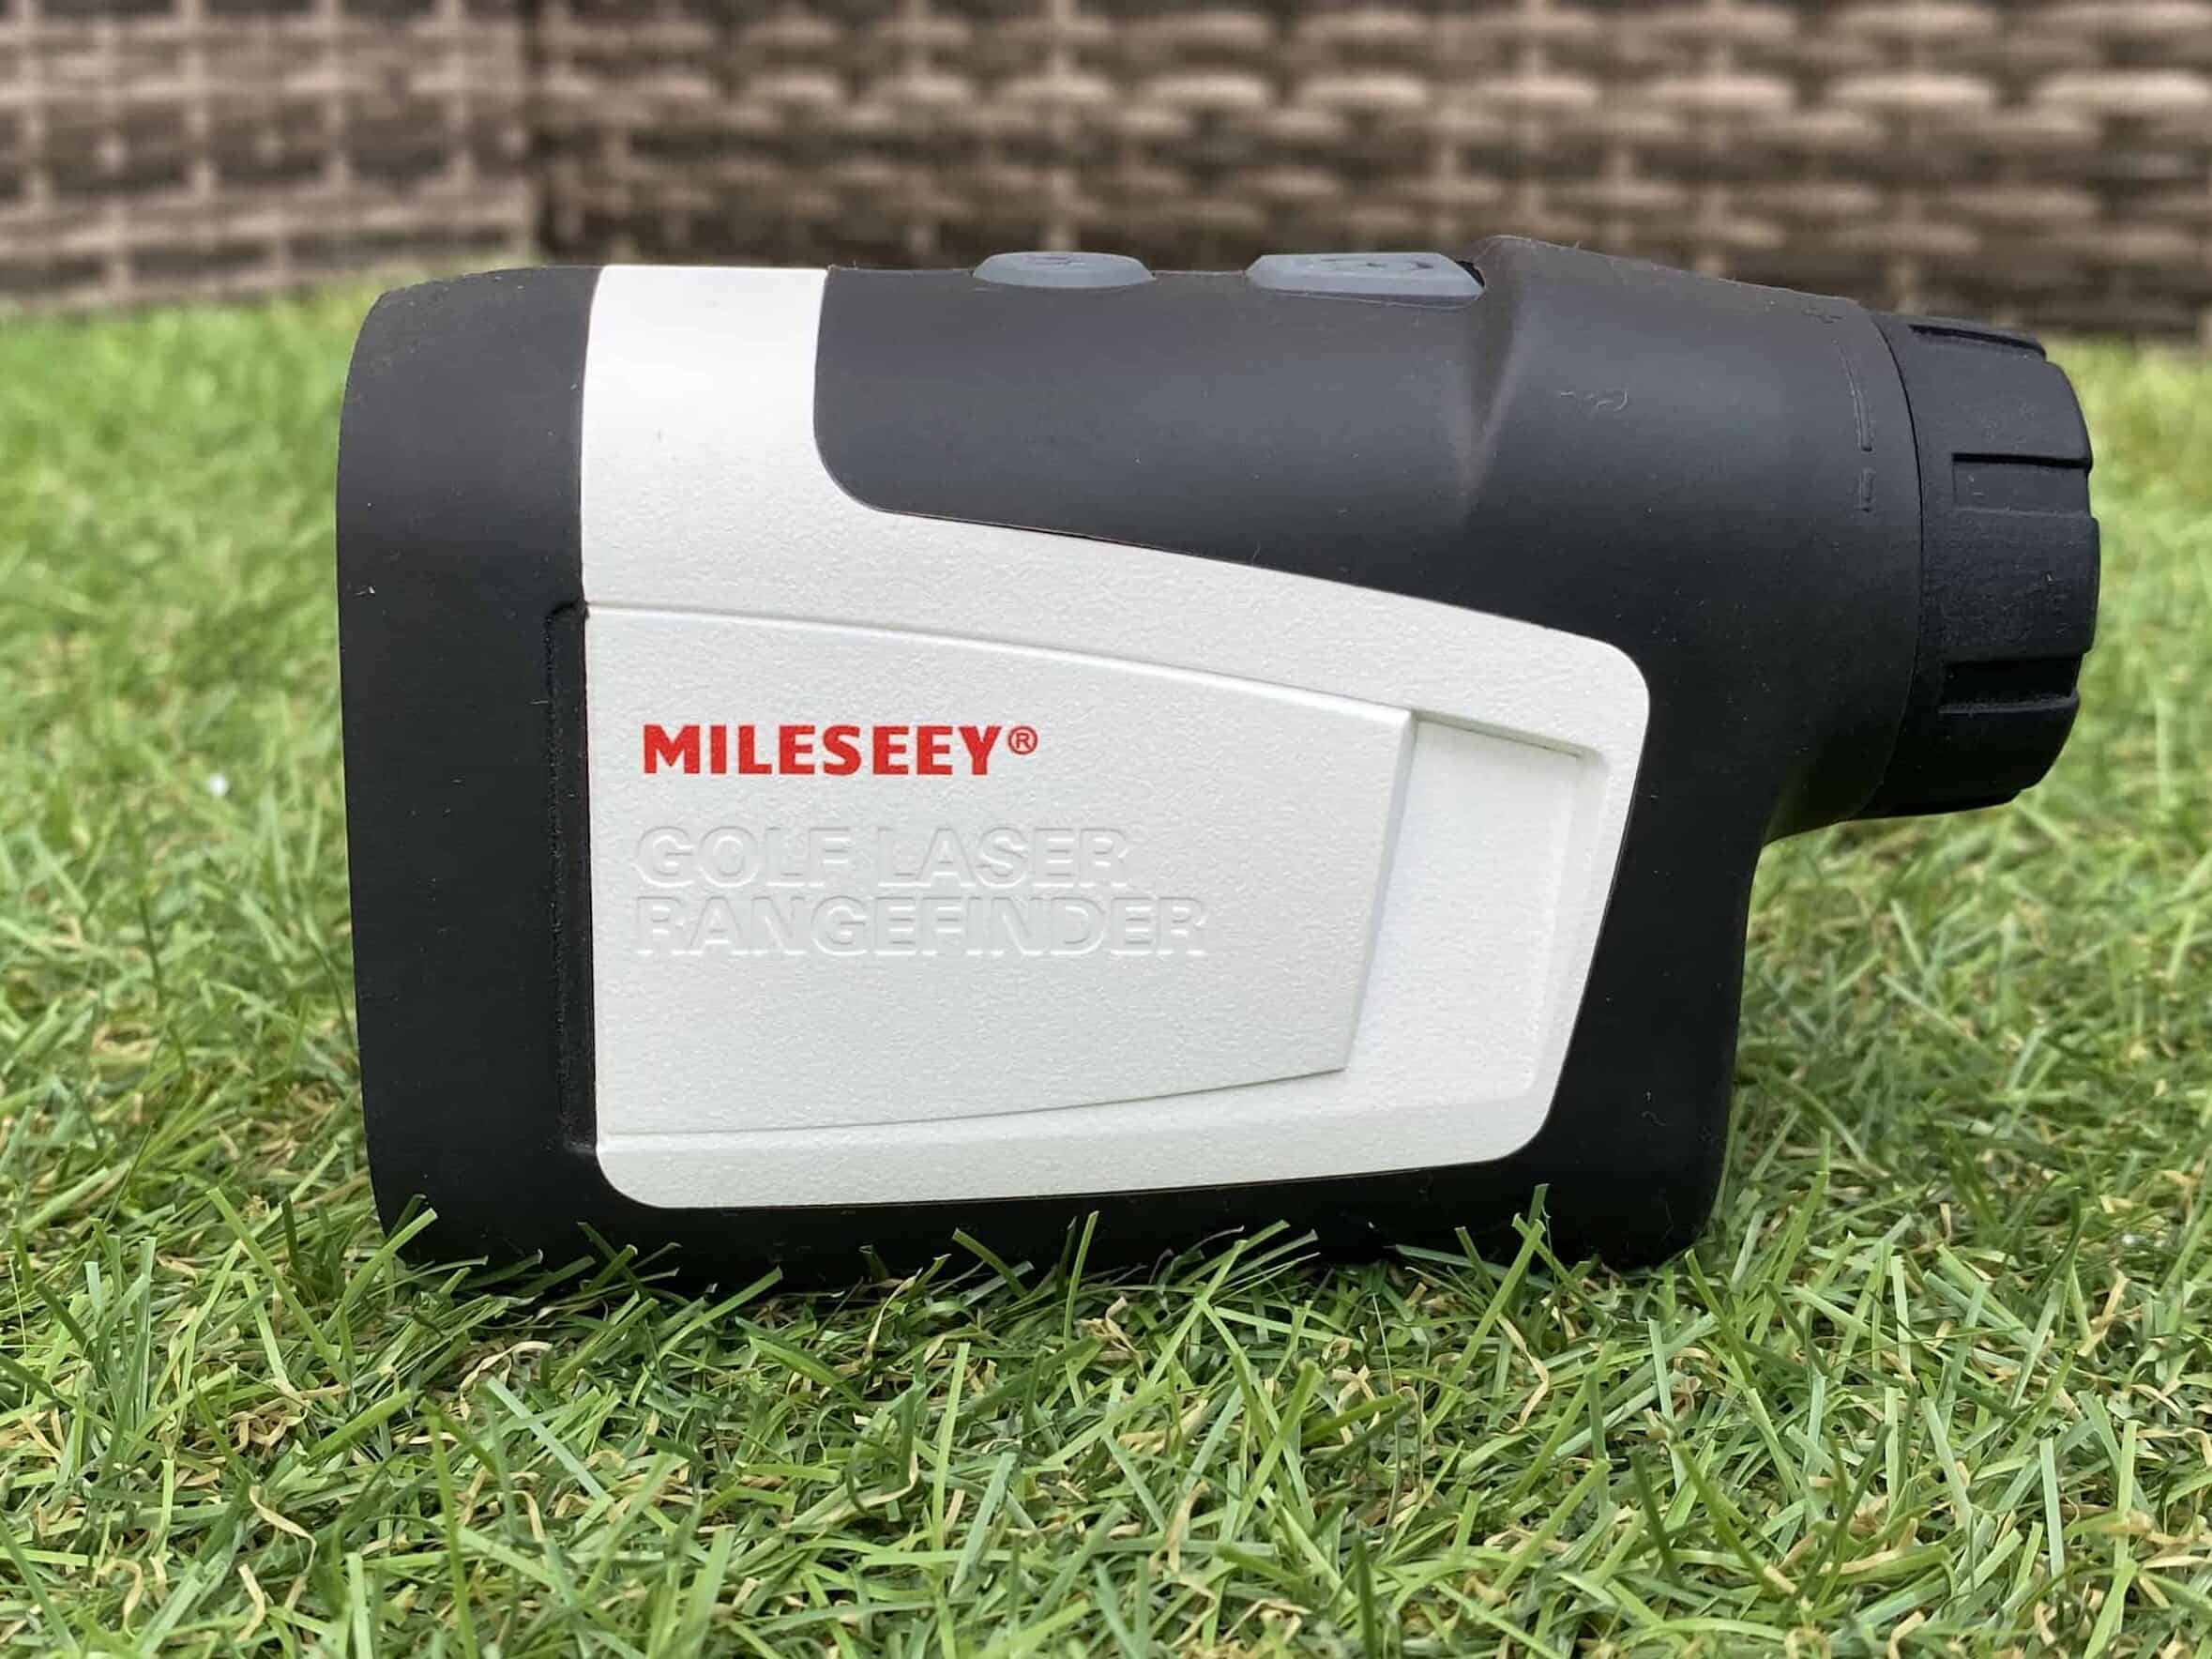 Milessey Golf Rangefinder